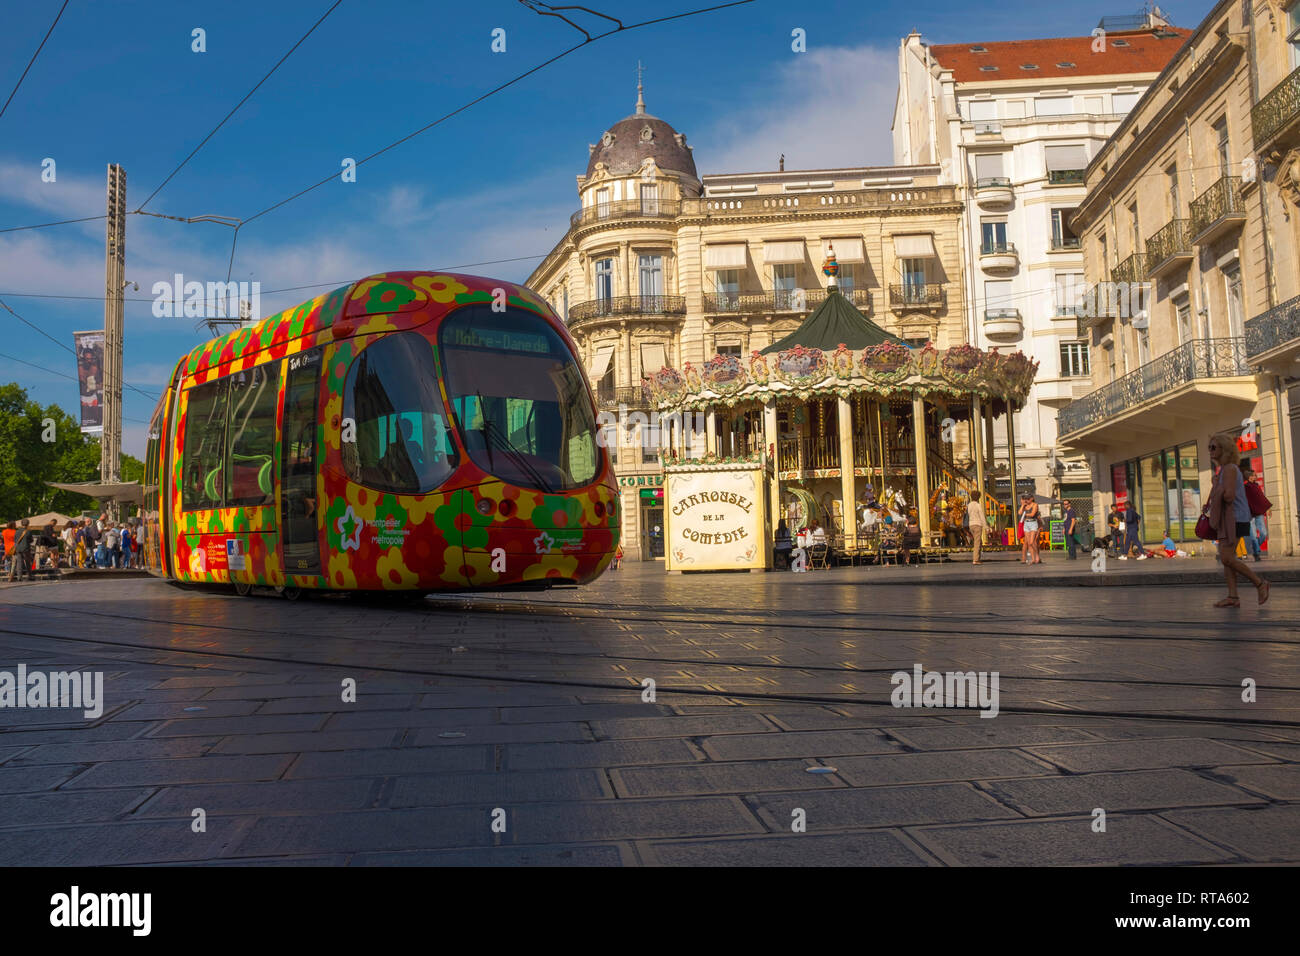 Straßenbahn in Place de la Comedie, der Hauptplatz Montpellier, Frankreich Stockfoto